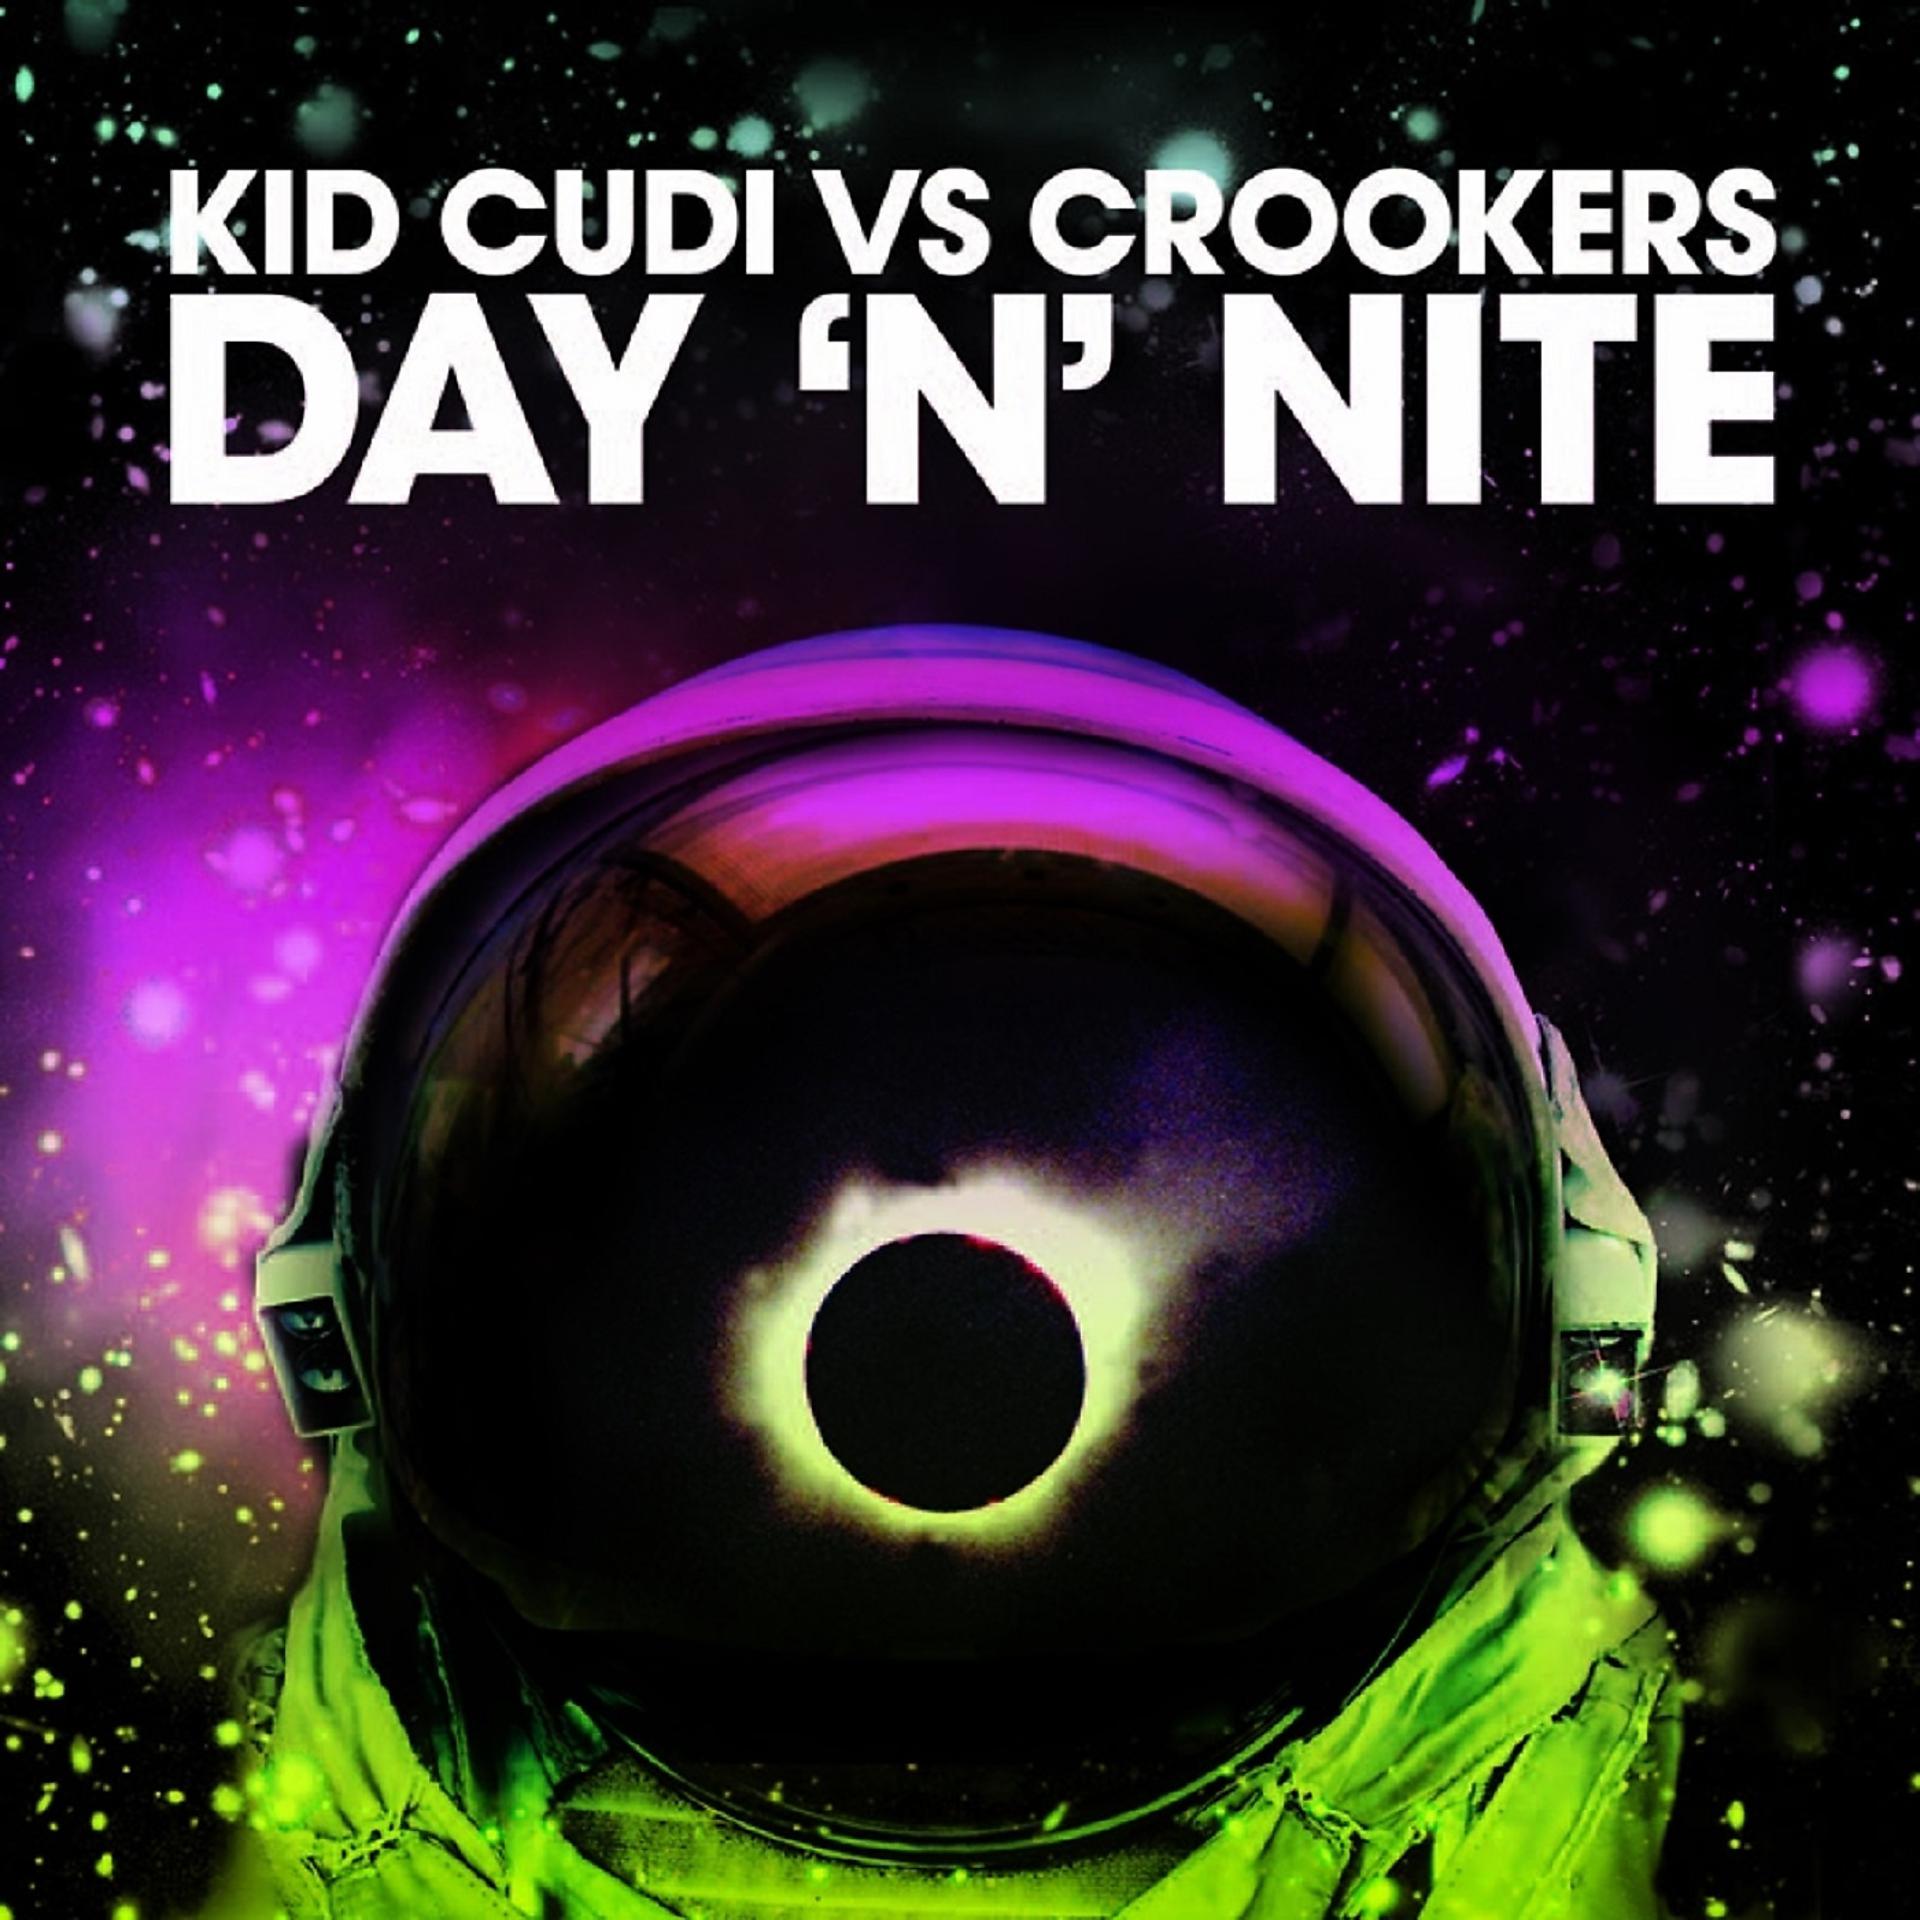 Day night kid. Kid Cudi vs. Crookers - Day 'n' Night. Kid Cudi vs. Crookers. Day and Night Kid Cudi. Kid Cudi - Day n Night (Crookers Remix).